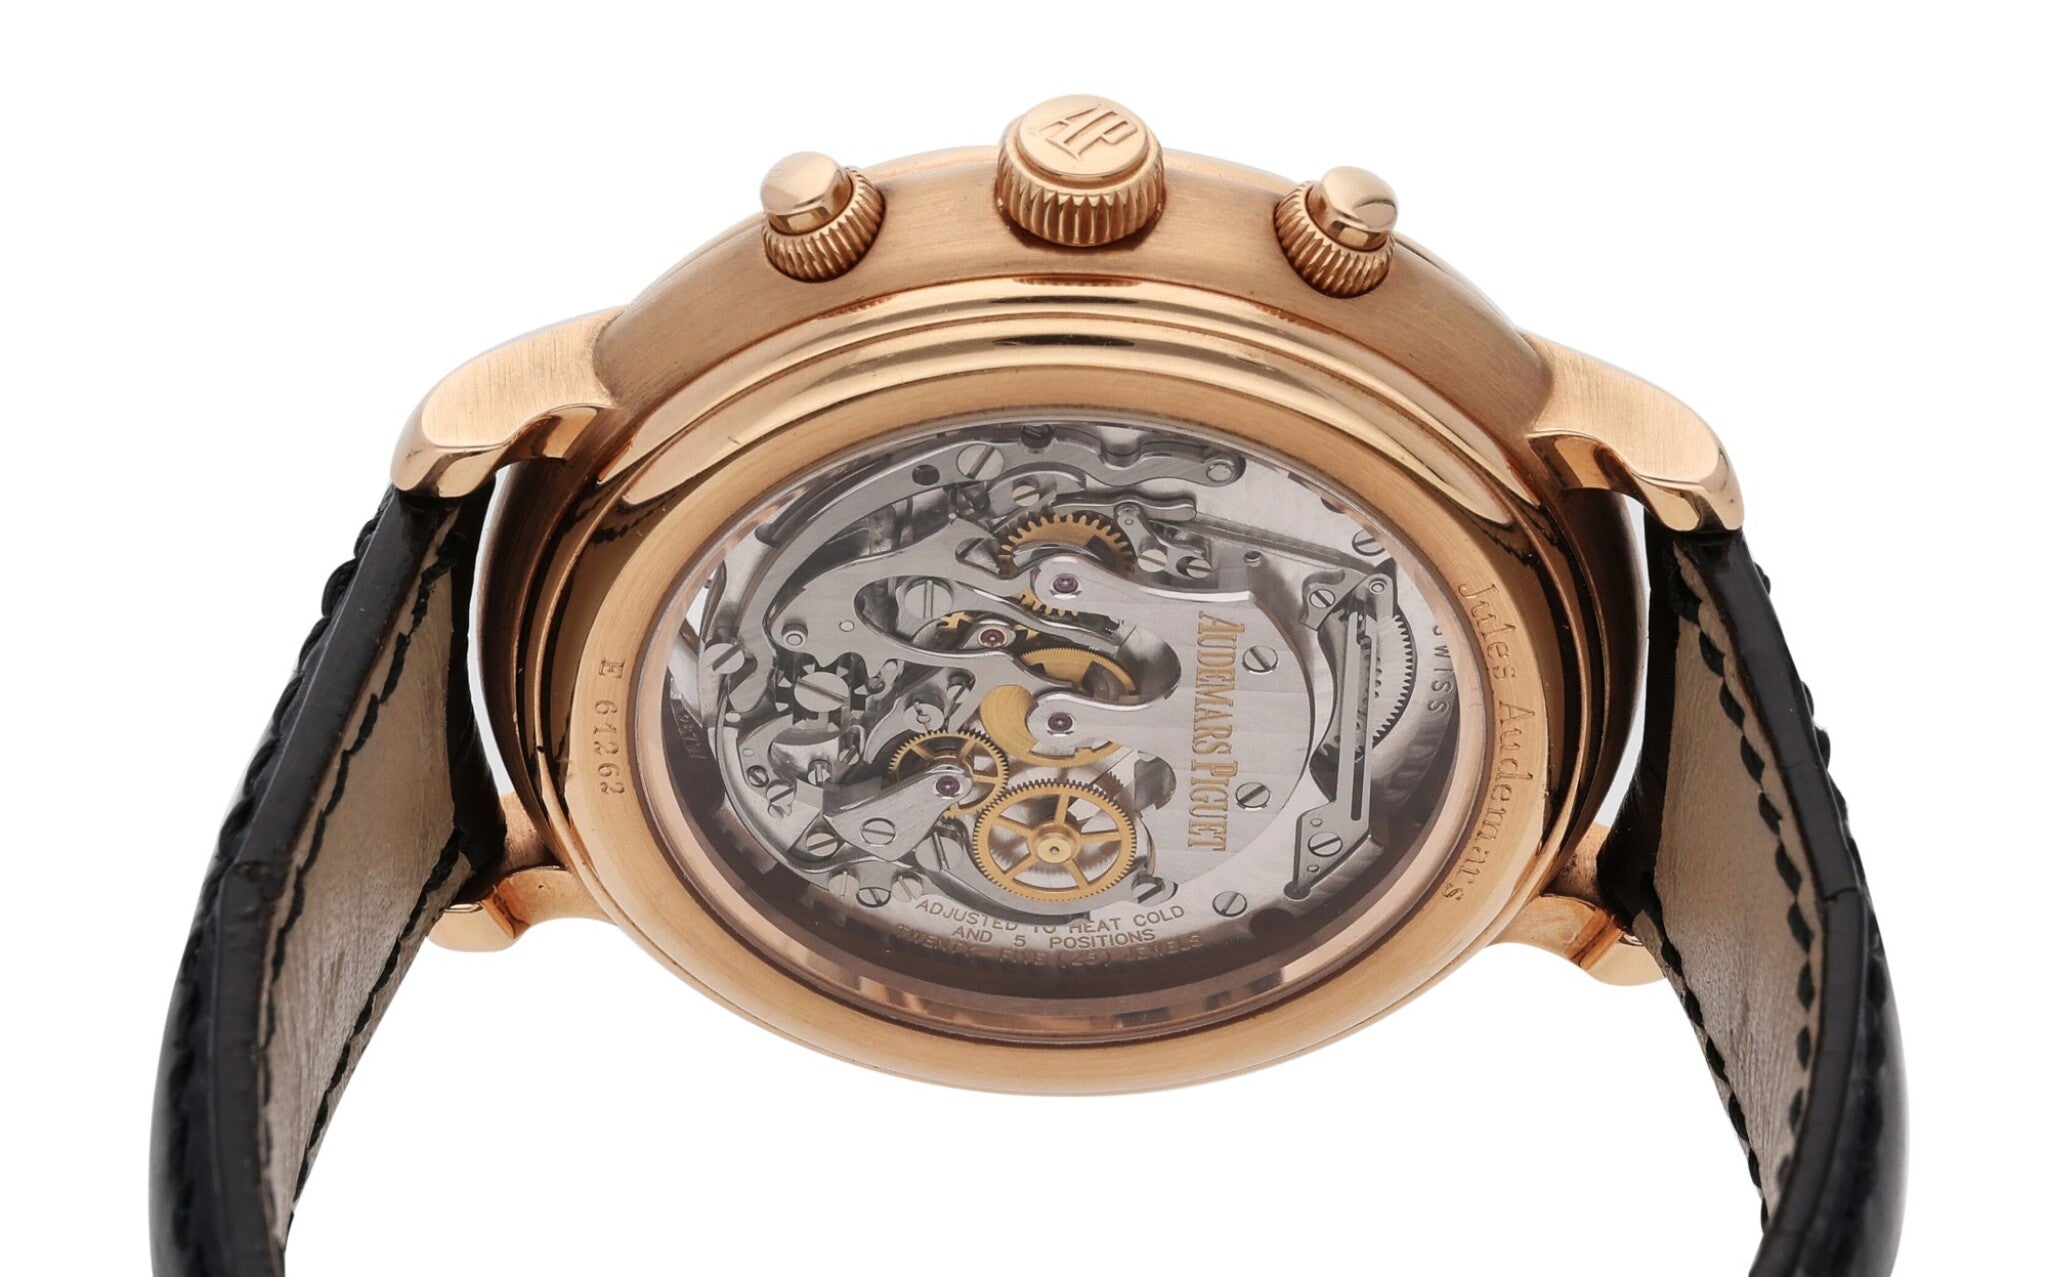 Audemars Piguet Jules Audemars Tourbillon Chronographe 18K Rose Gold Men's Watch